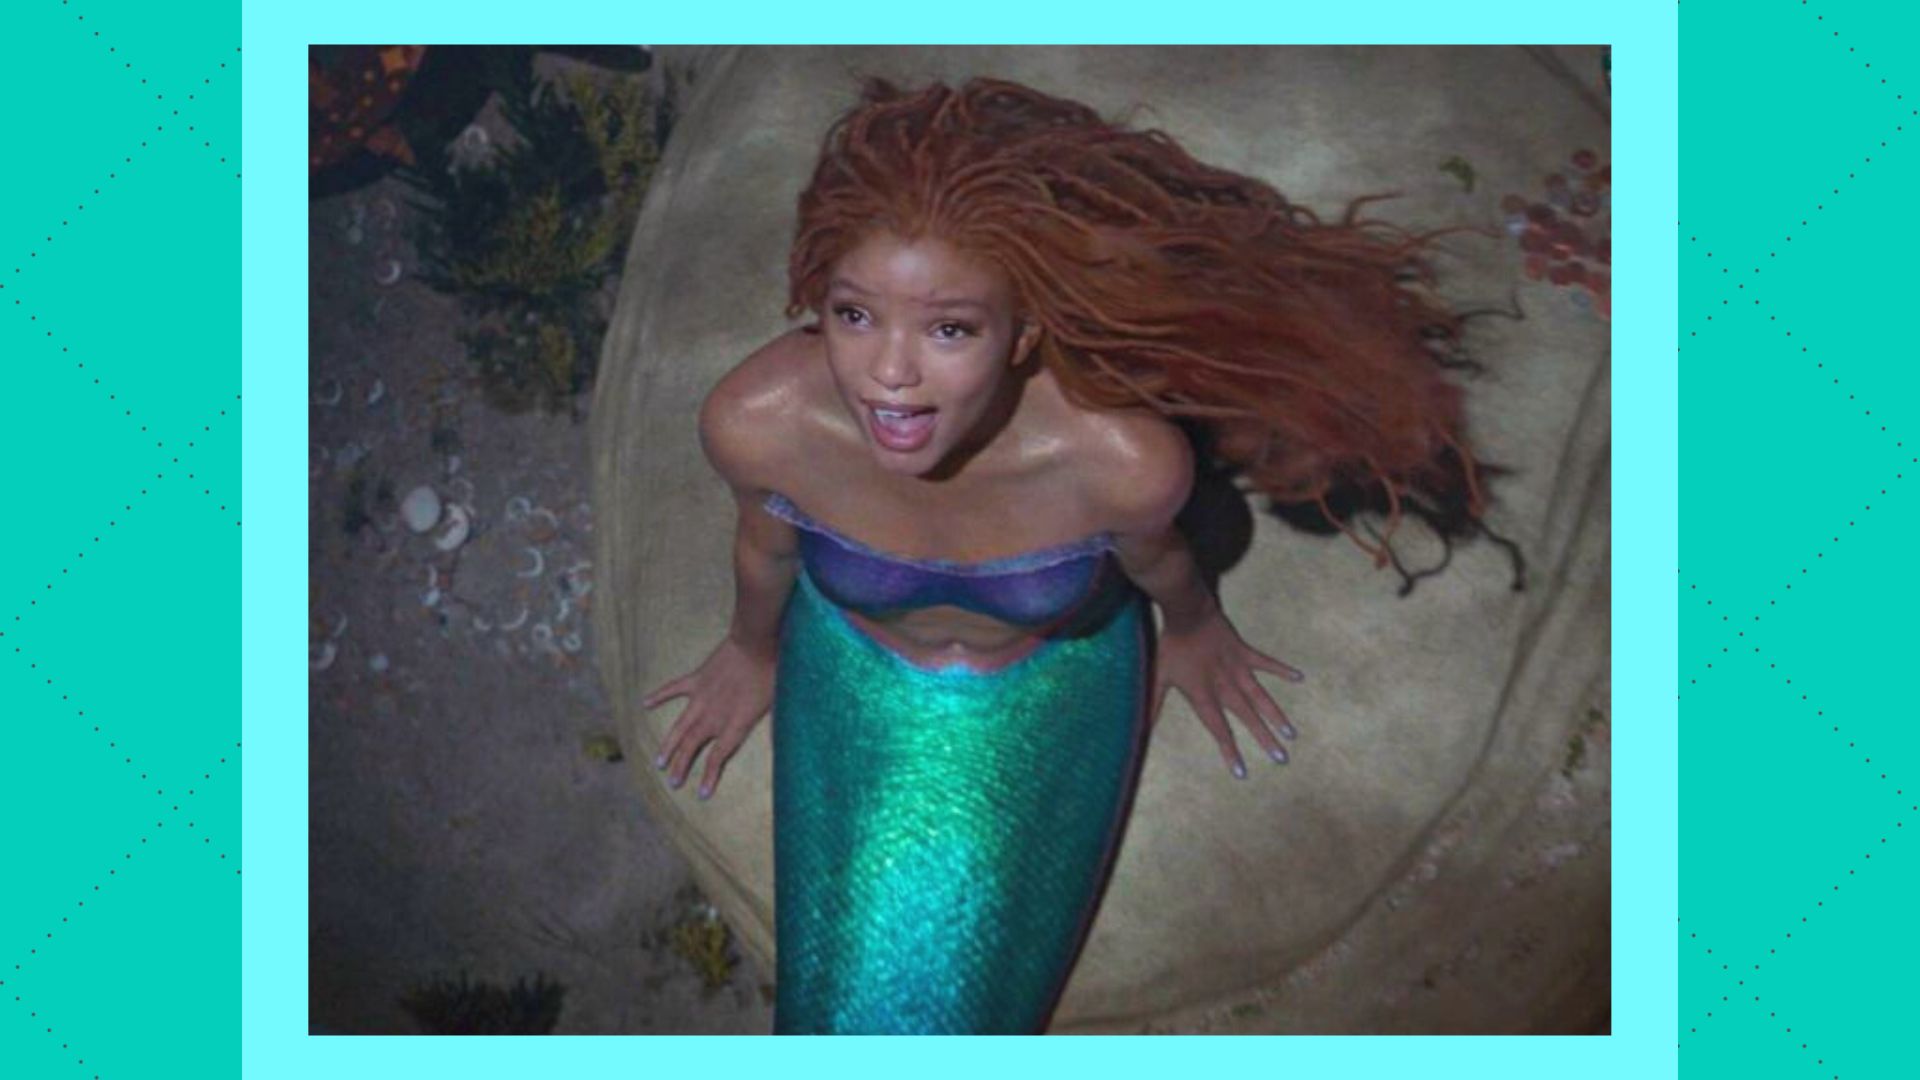 Is The Little Mermaid streaming on Disney Plus yet?